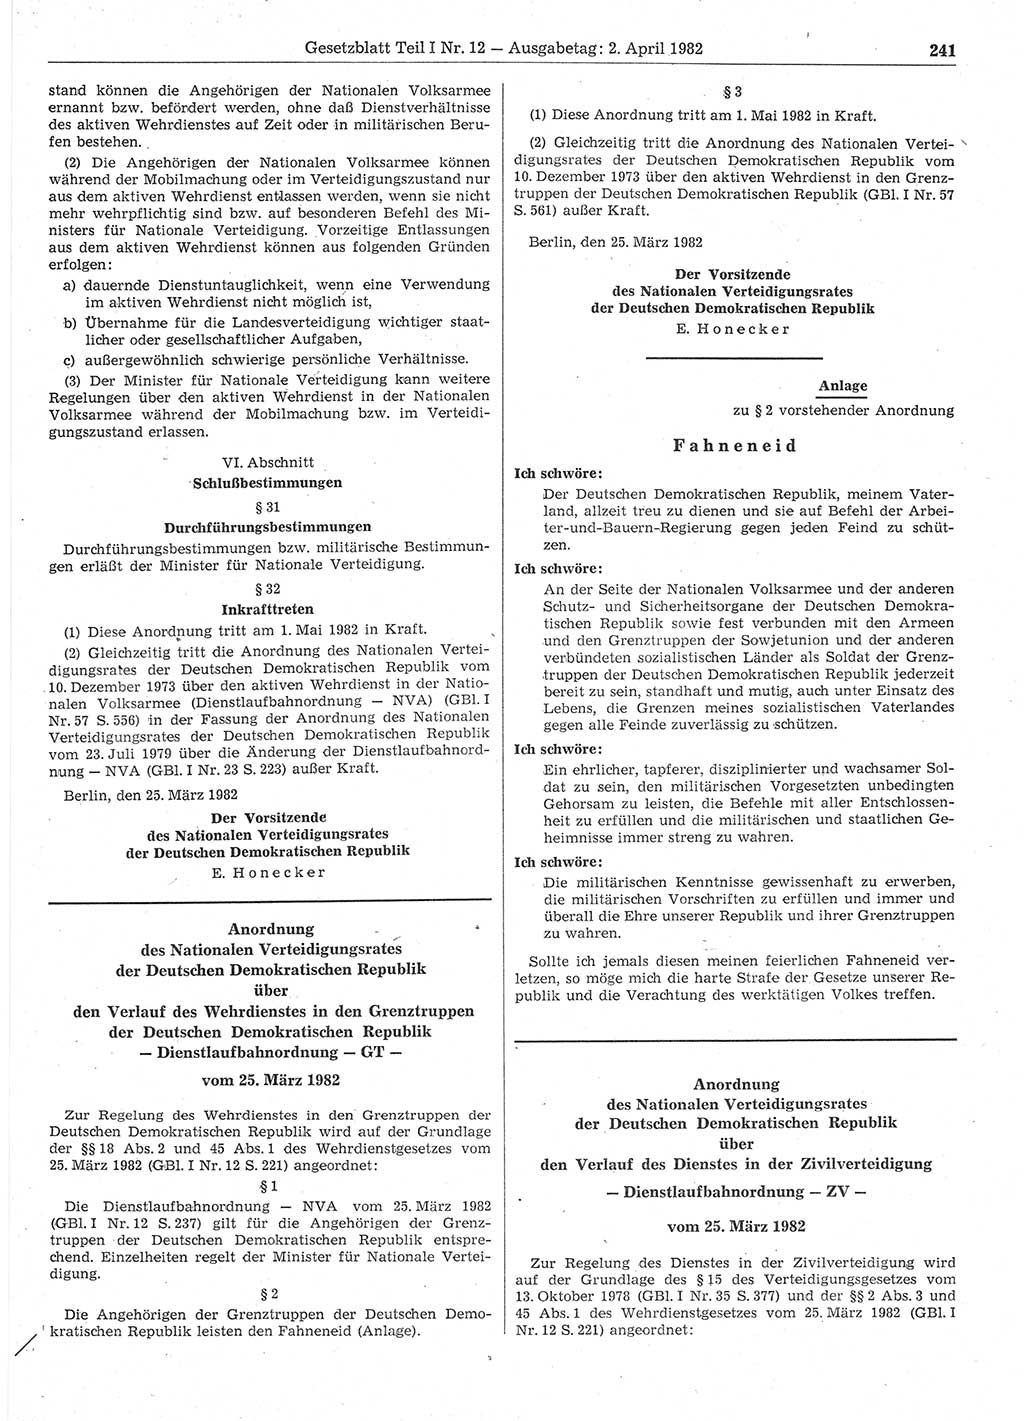 Gesetzblatt (GBl.) der Deutschen Demokratischen Republik (DDR) Teil Ⅰ 1982, Seite 241 (GBl. DDR Ⅰ 1982, S. 241)